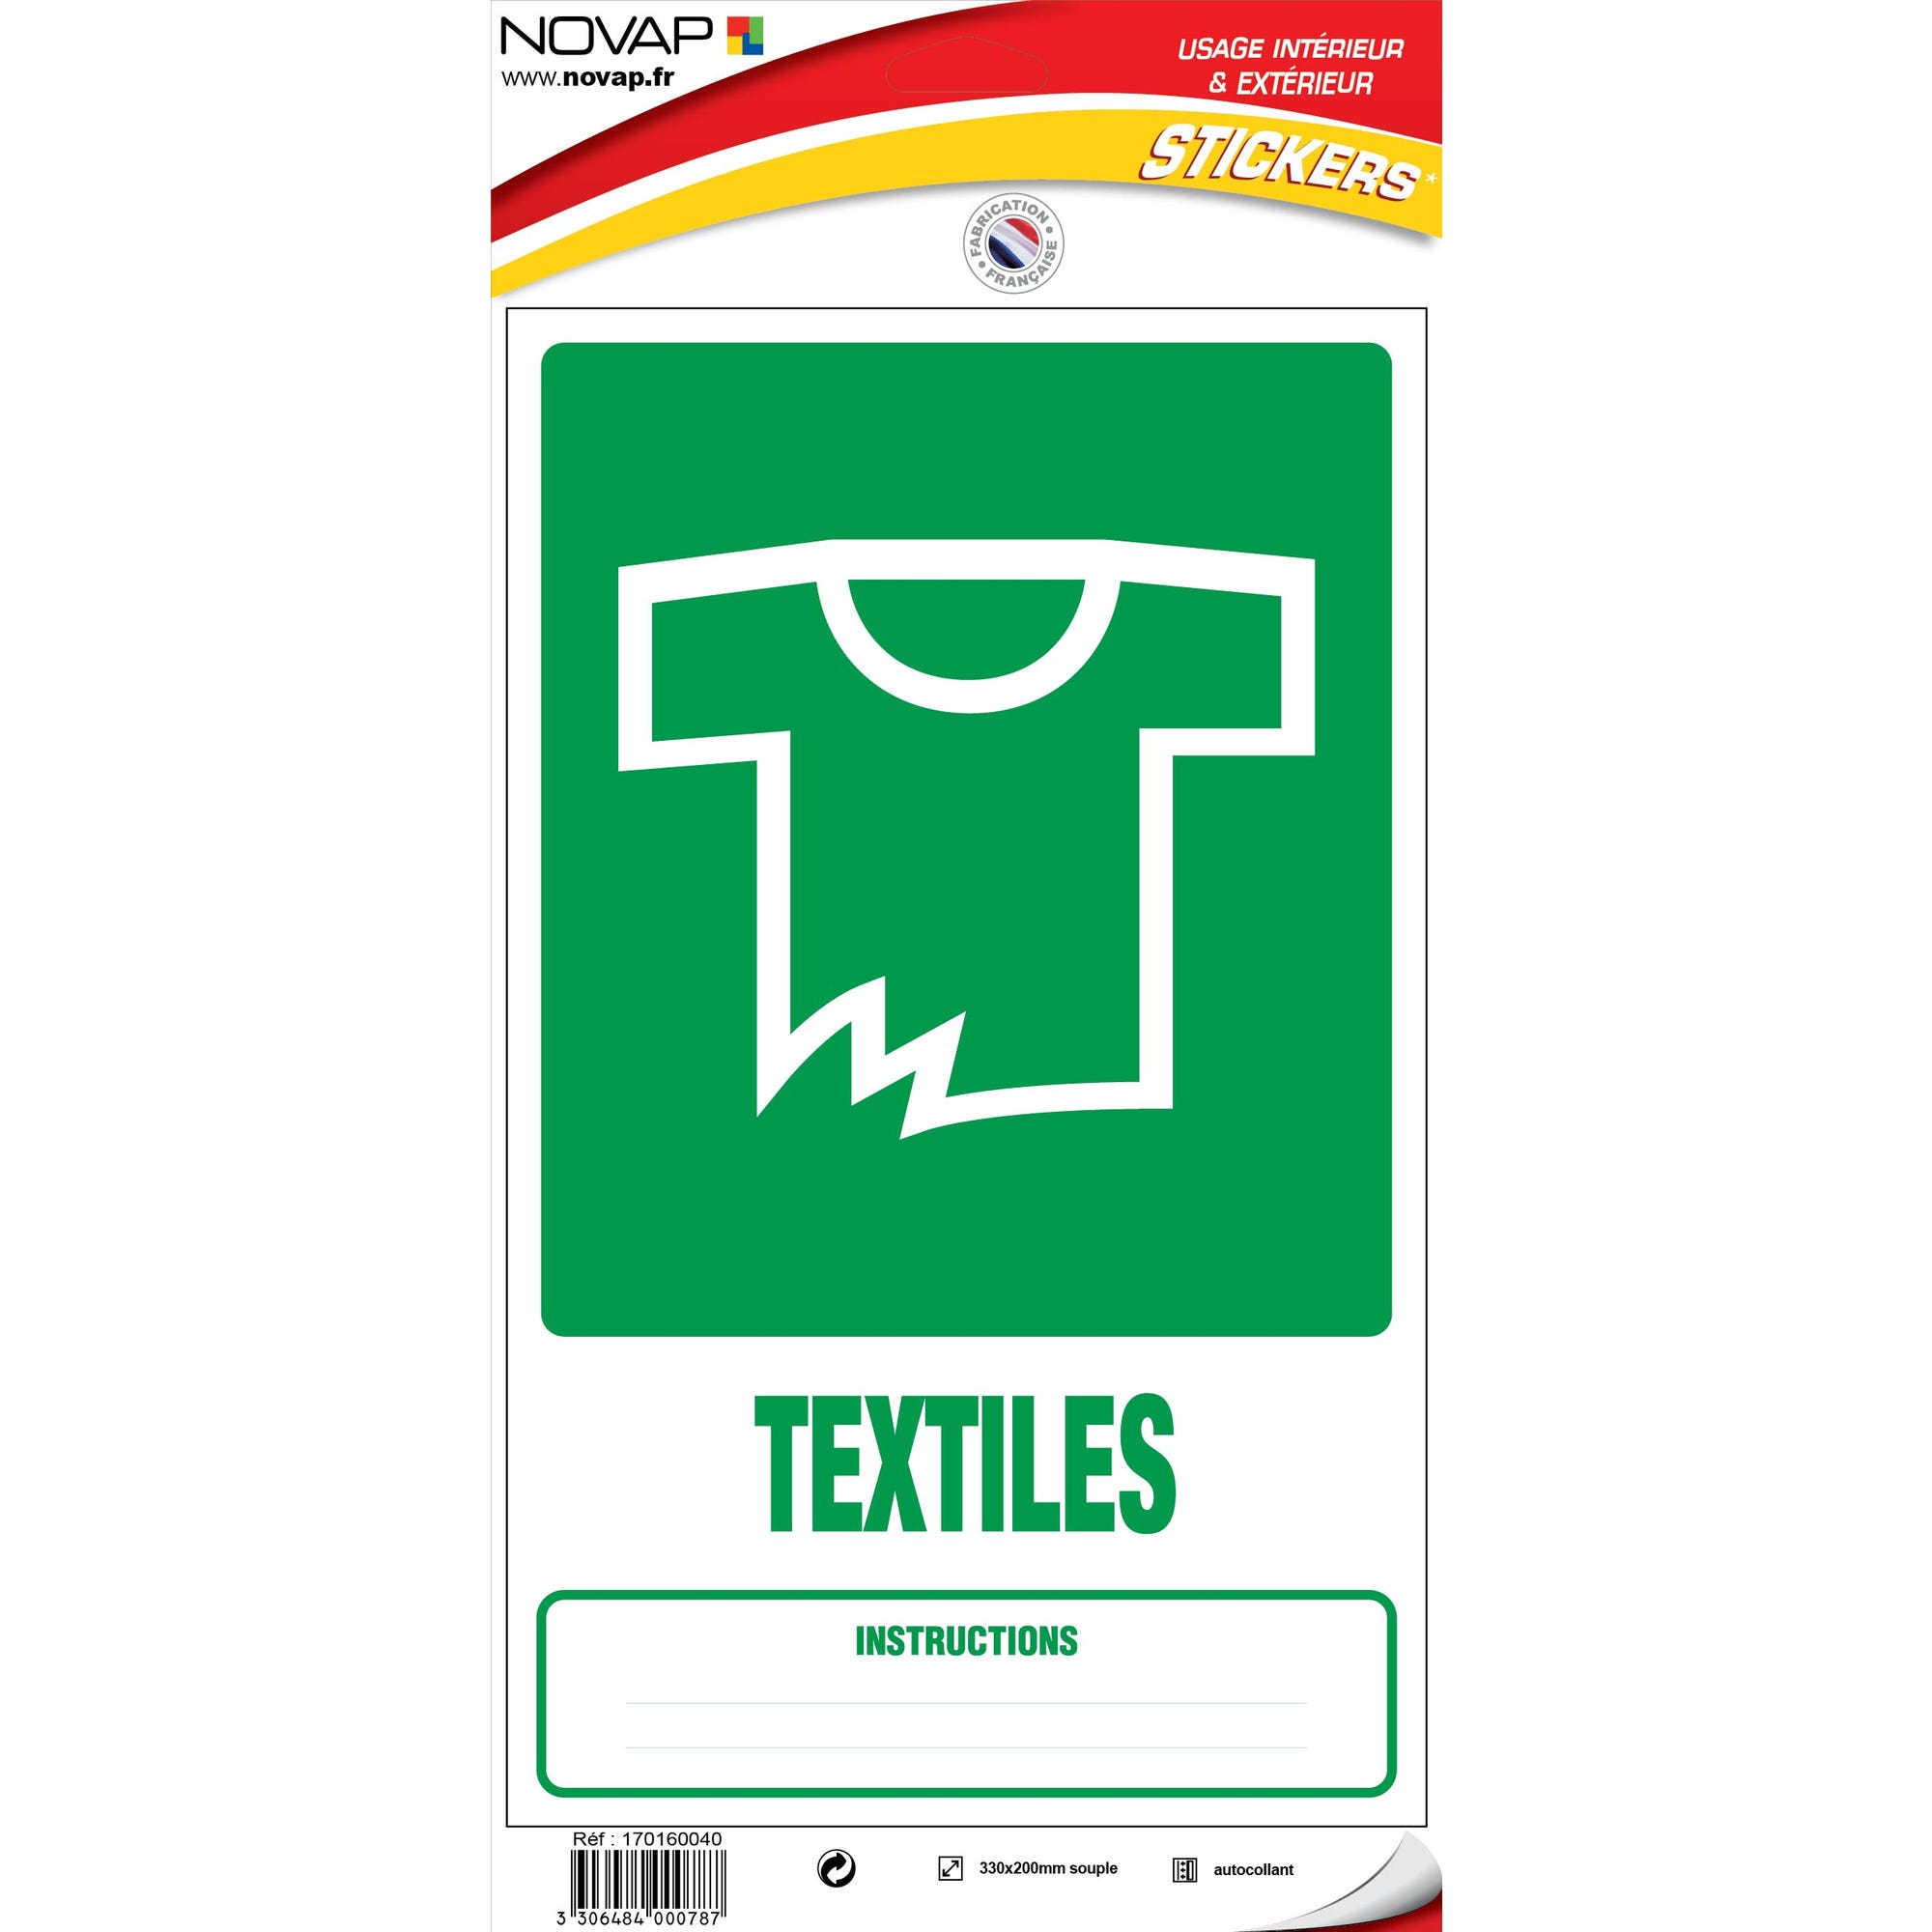 Panneau Dechets textiles - Vinyle adhésif 330x200mm - 4000787 0